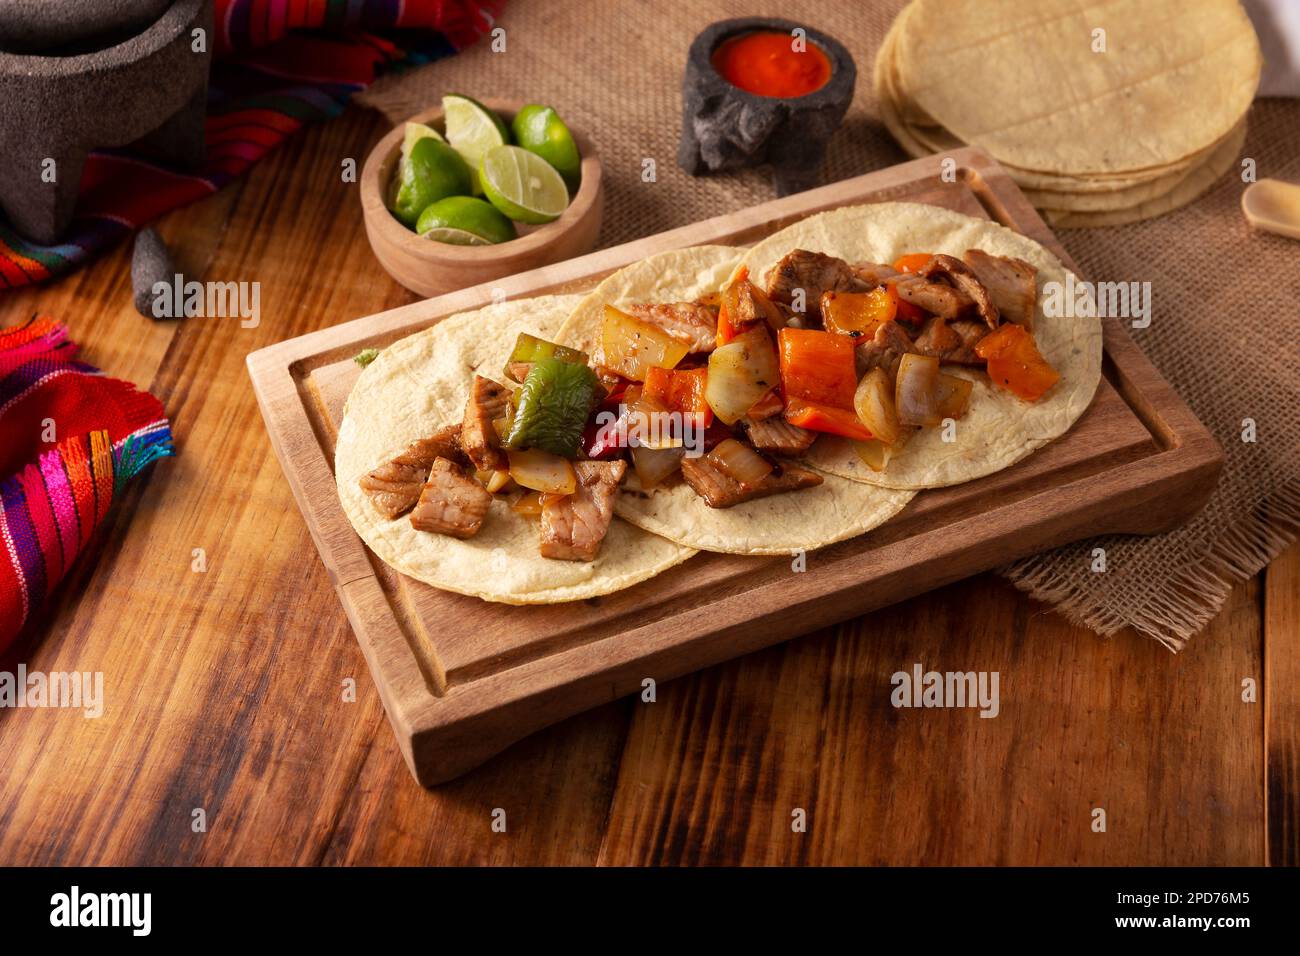 Alambre de Res. Sehr beliebtes Rezept in Mexiko, die Hauptzutaten sind Fleischstücke, Zwiebeln, Speck und Paprika, die üblicherweise auf dem Grill geröstet werden Stockfoto